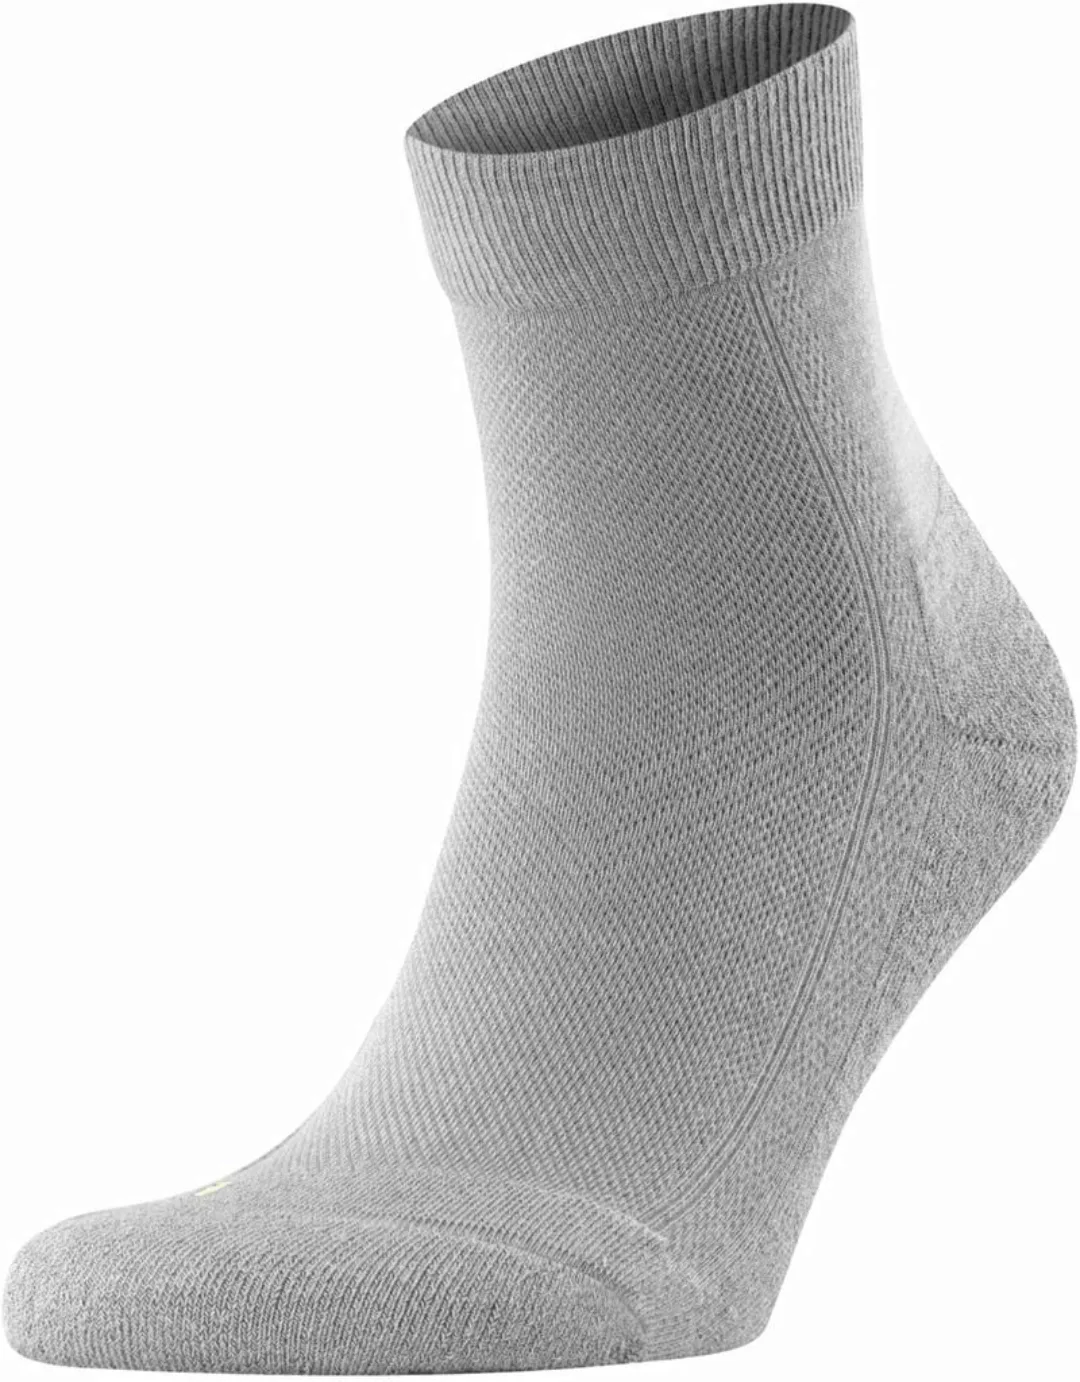 Falke Cool Kick Socke Grau - Größe 46-48 günstig online kaufen